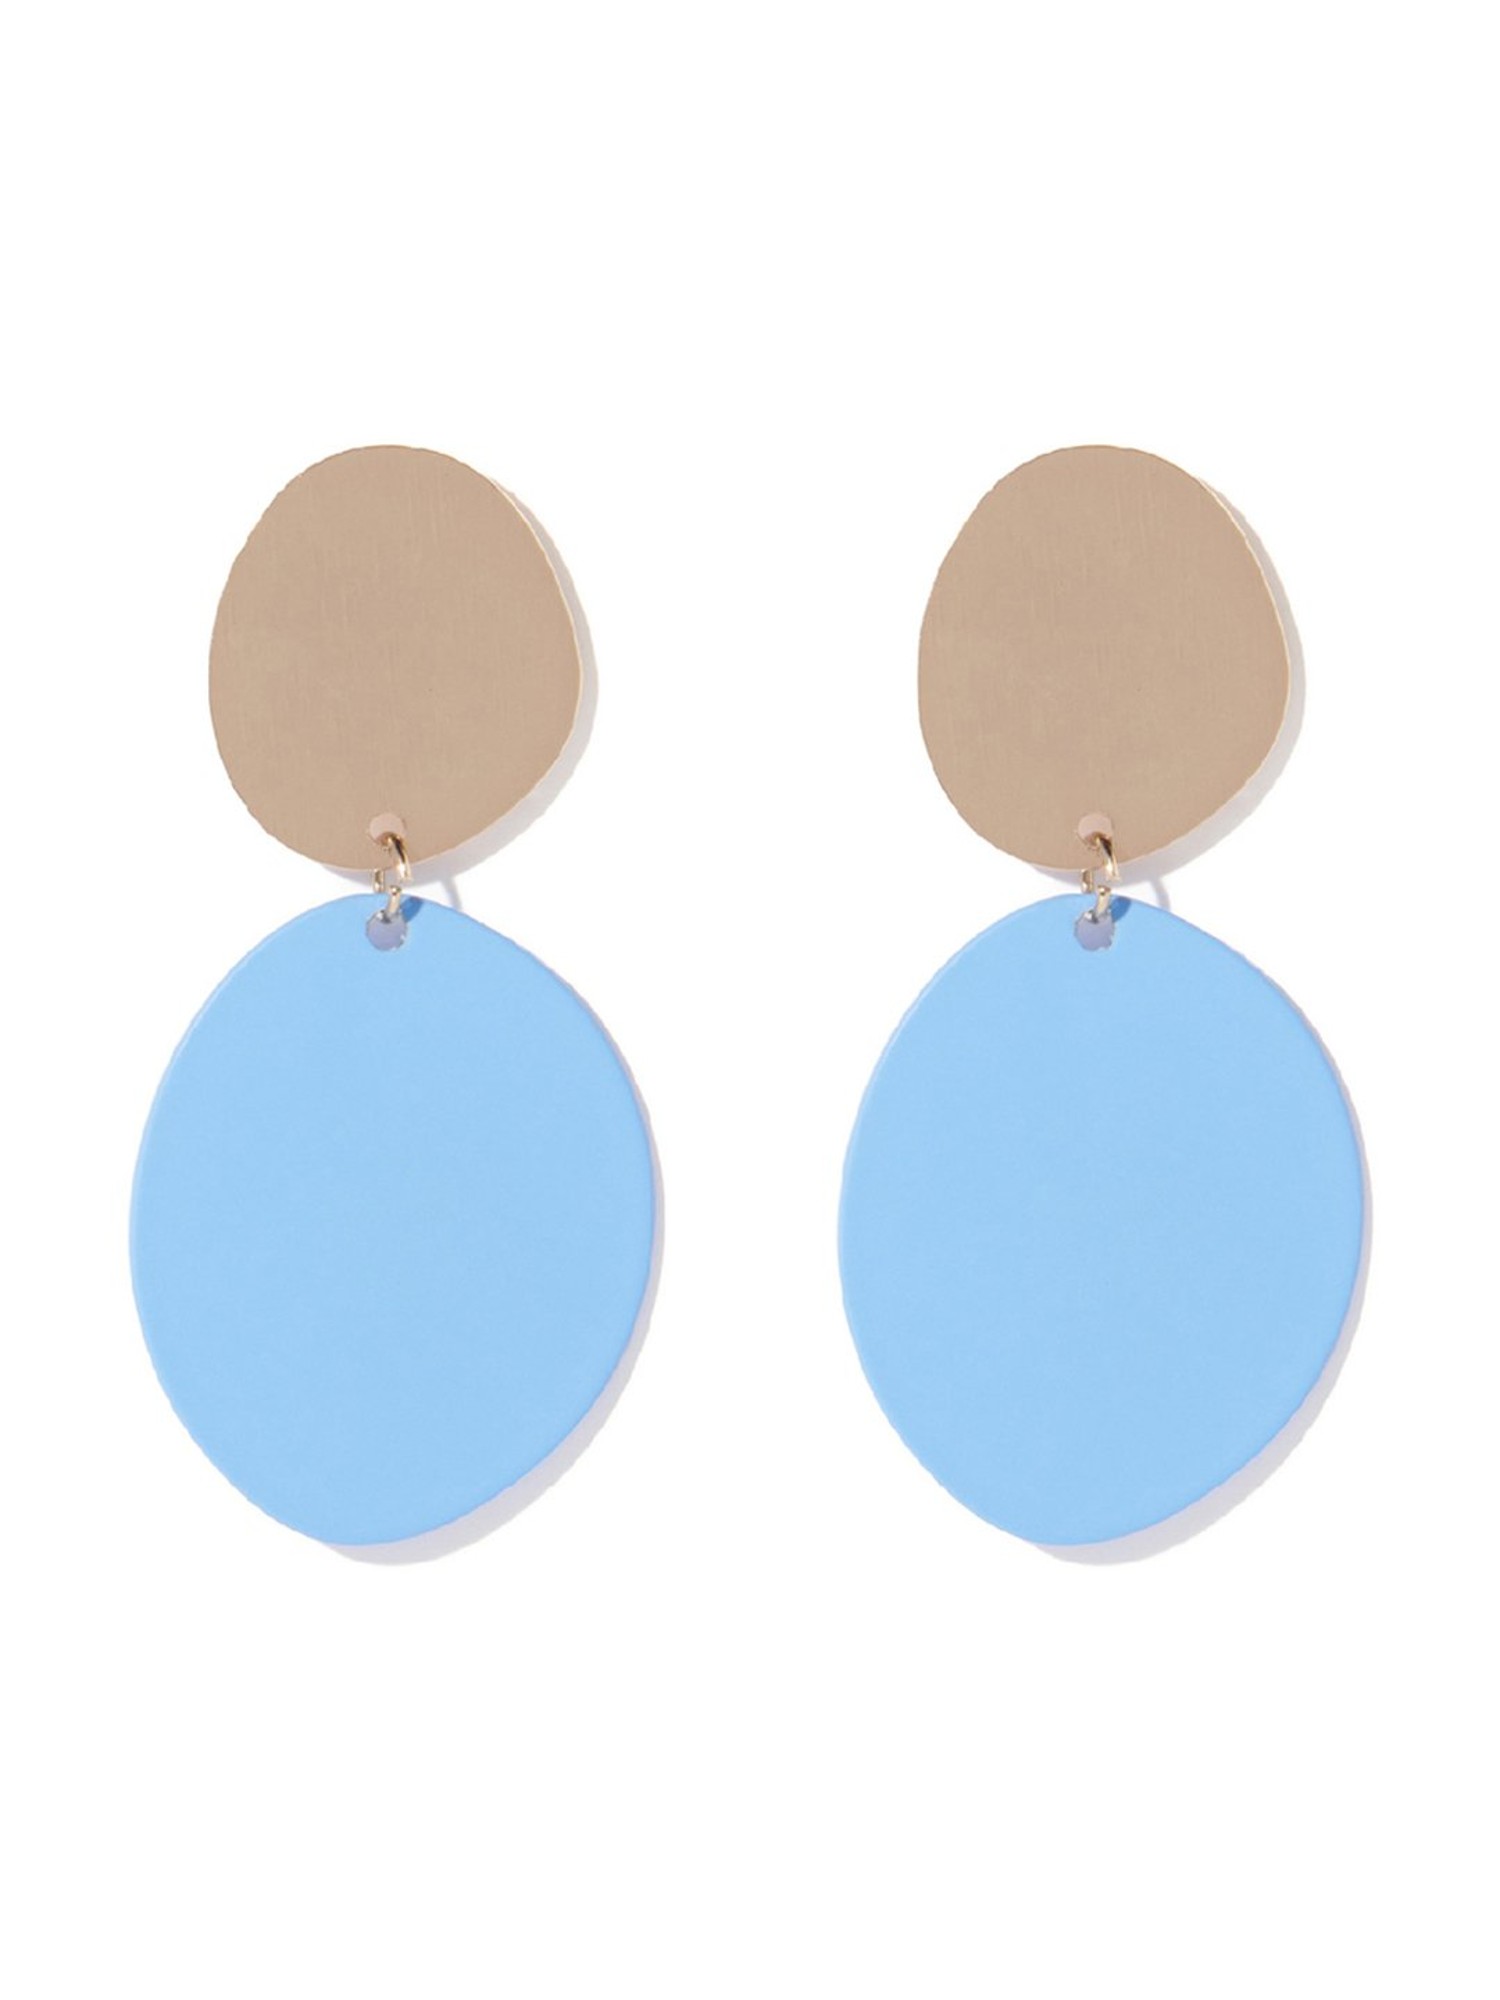 Buy Blue Earrings for Women by Oomph Online | Ajio.com